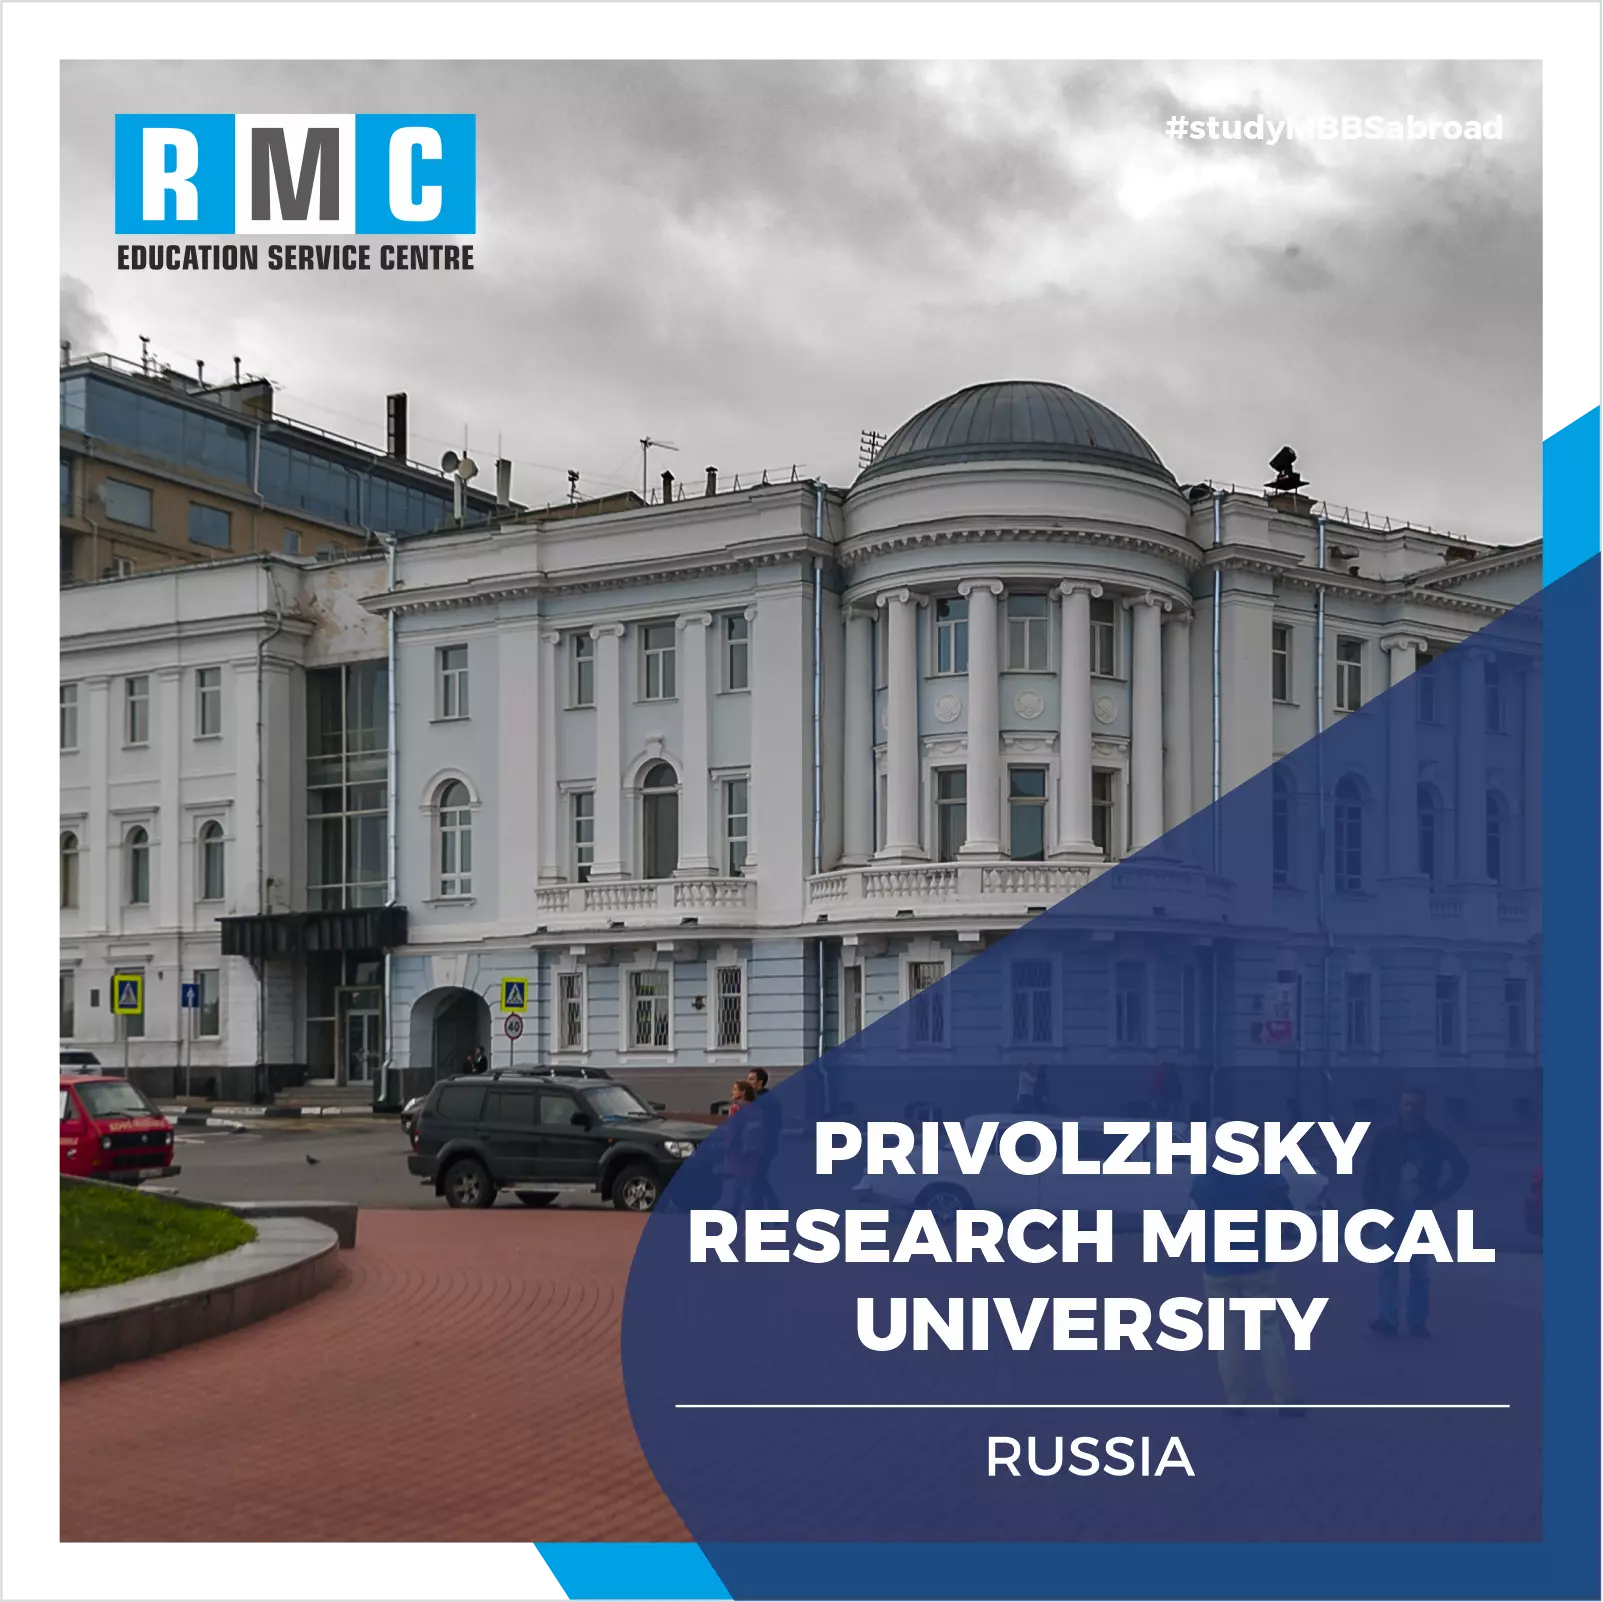 Privolzhsky Research Medical University